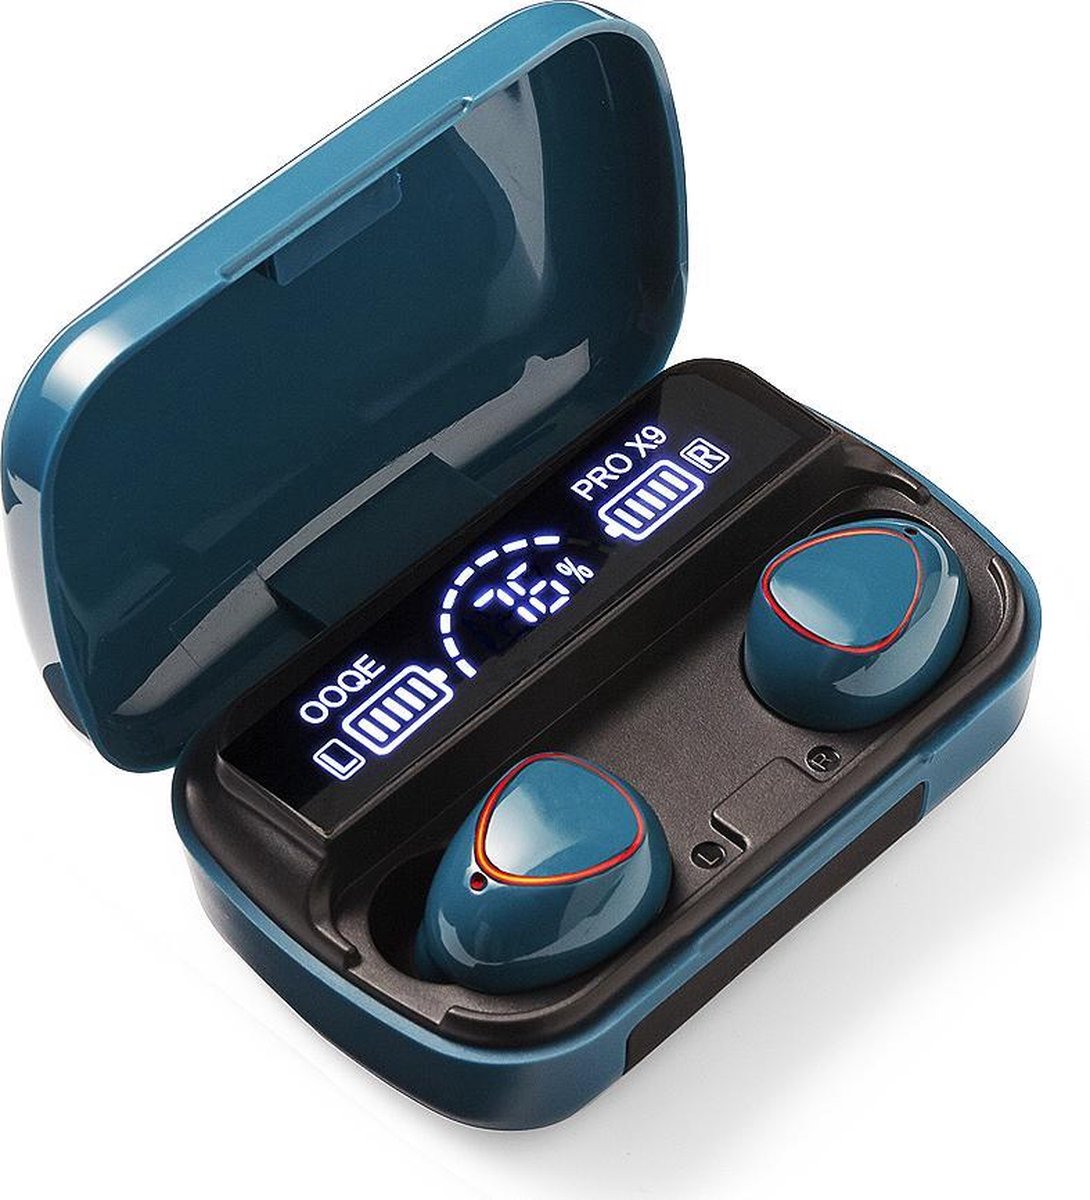 OOQE PRO X9 Draadloze Oordopjes 80 uur batterijduur | Water- & stofbestendig |... | bol.com